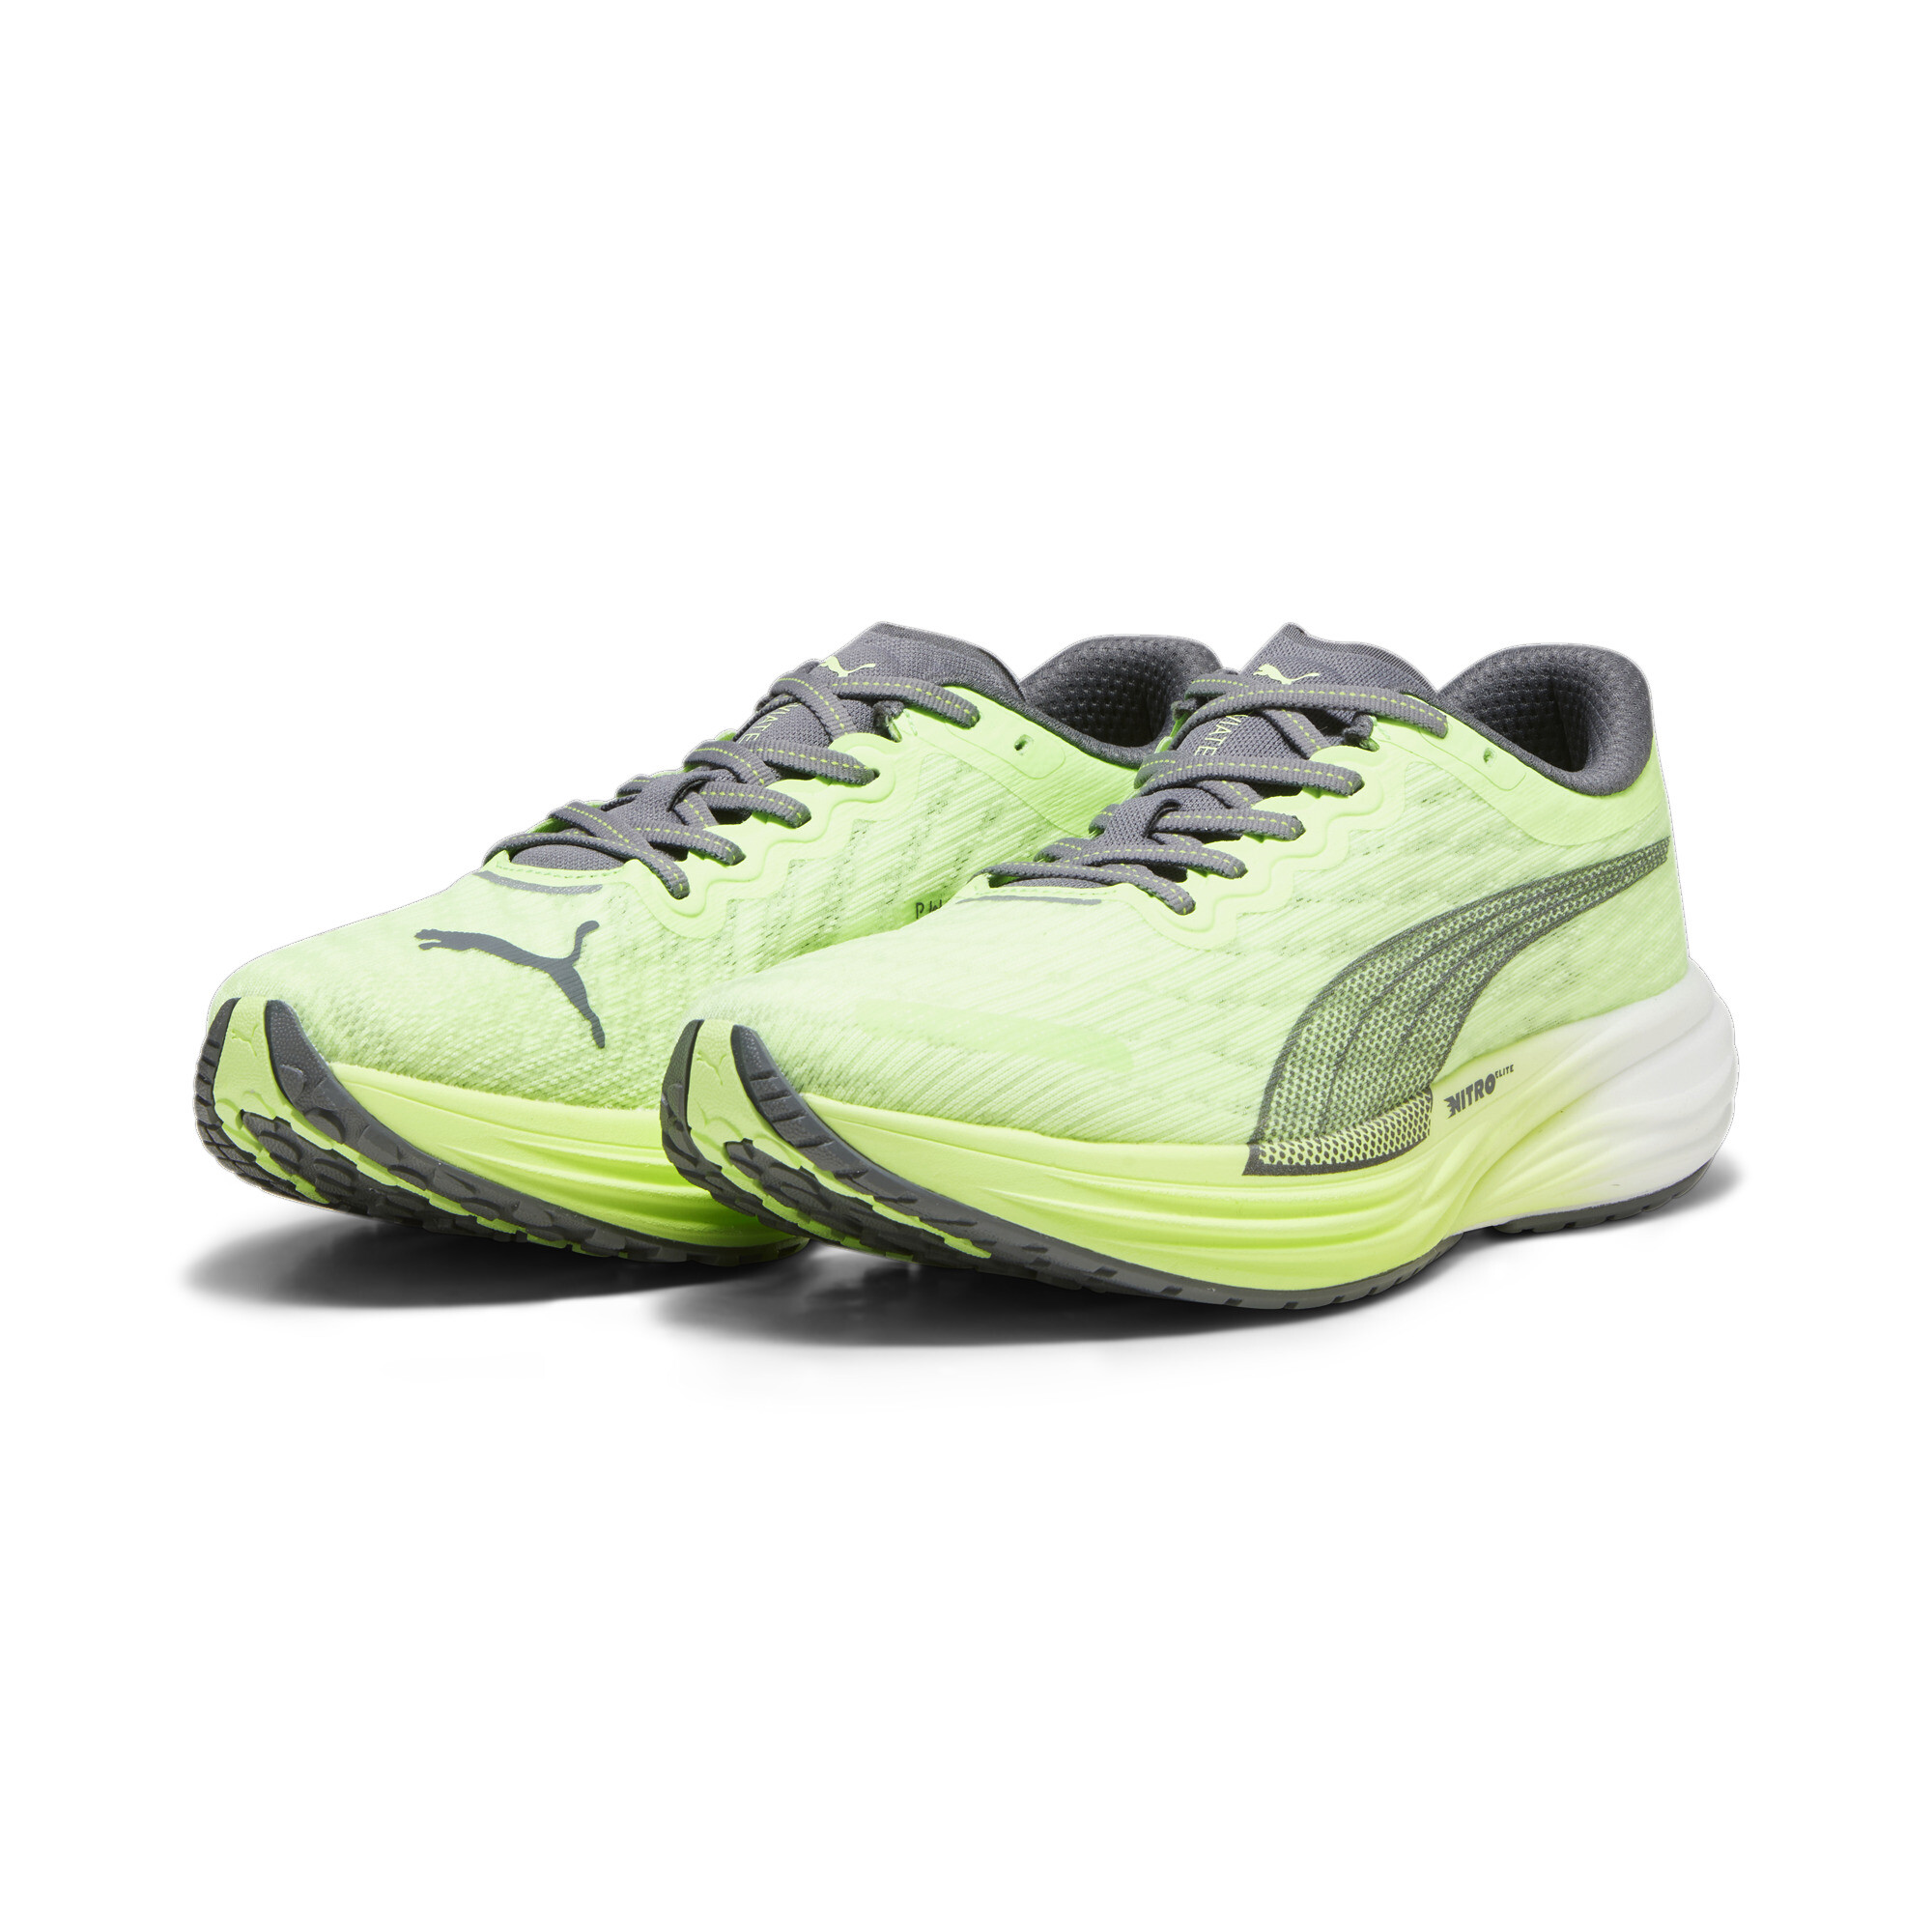 Men's PUMA Deviate NITROâ¢ 2 Running Shoes In Green, Size EU 41